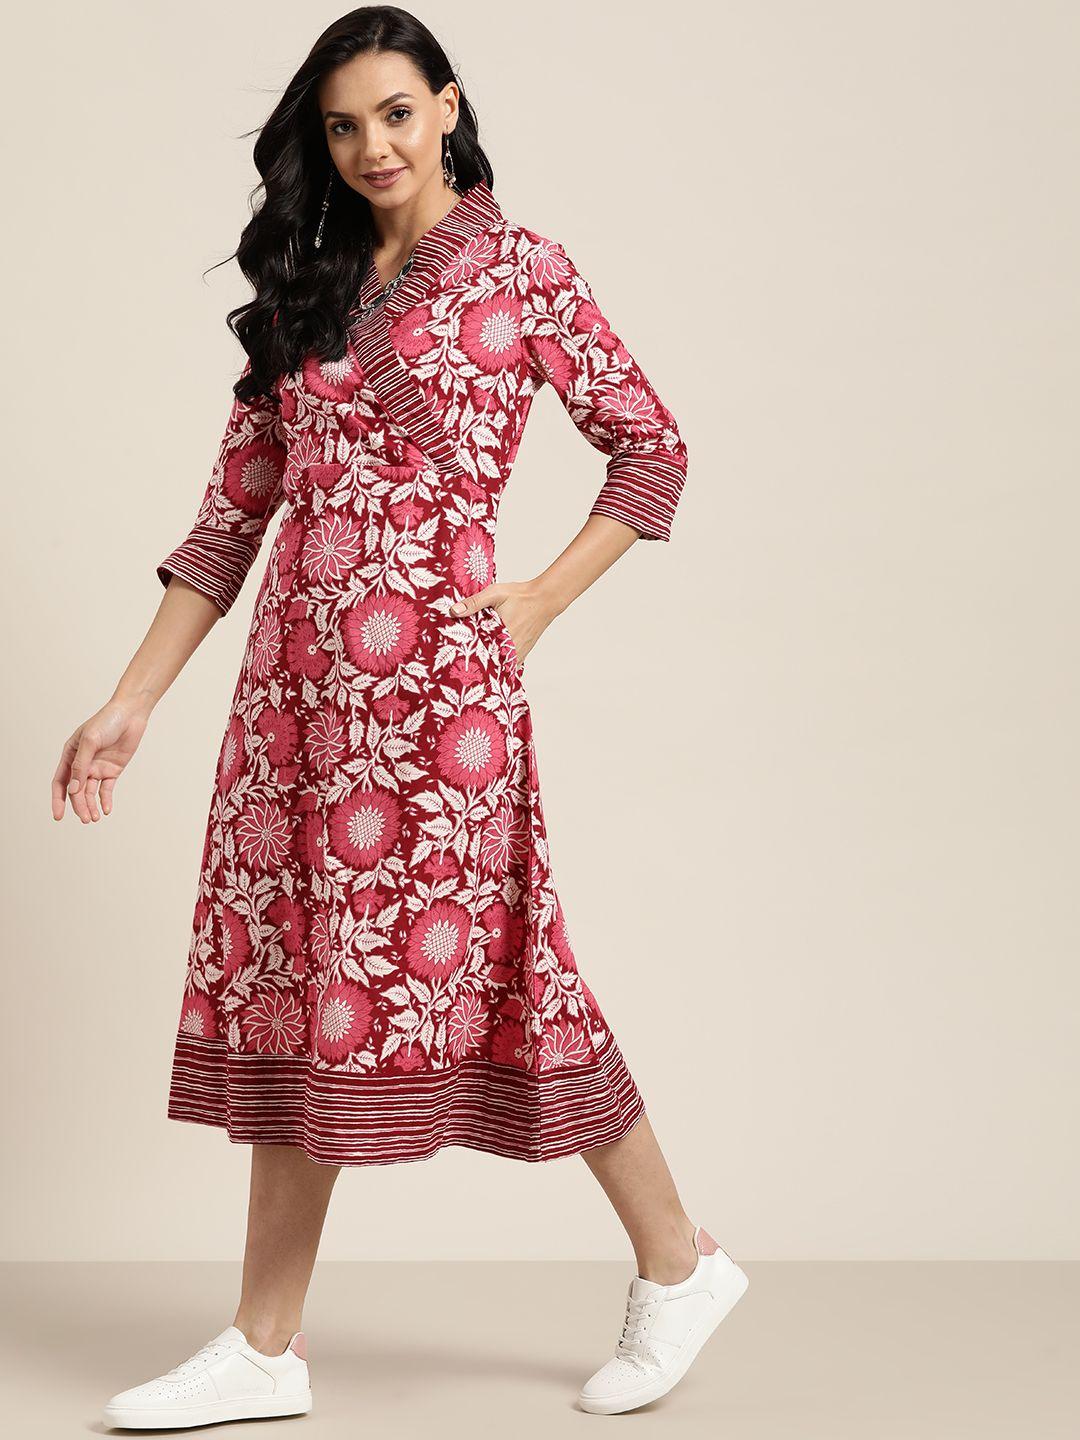 sangria maroon & white ethnic motifs cotton wrap dress